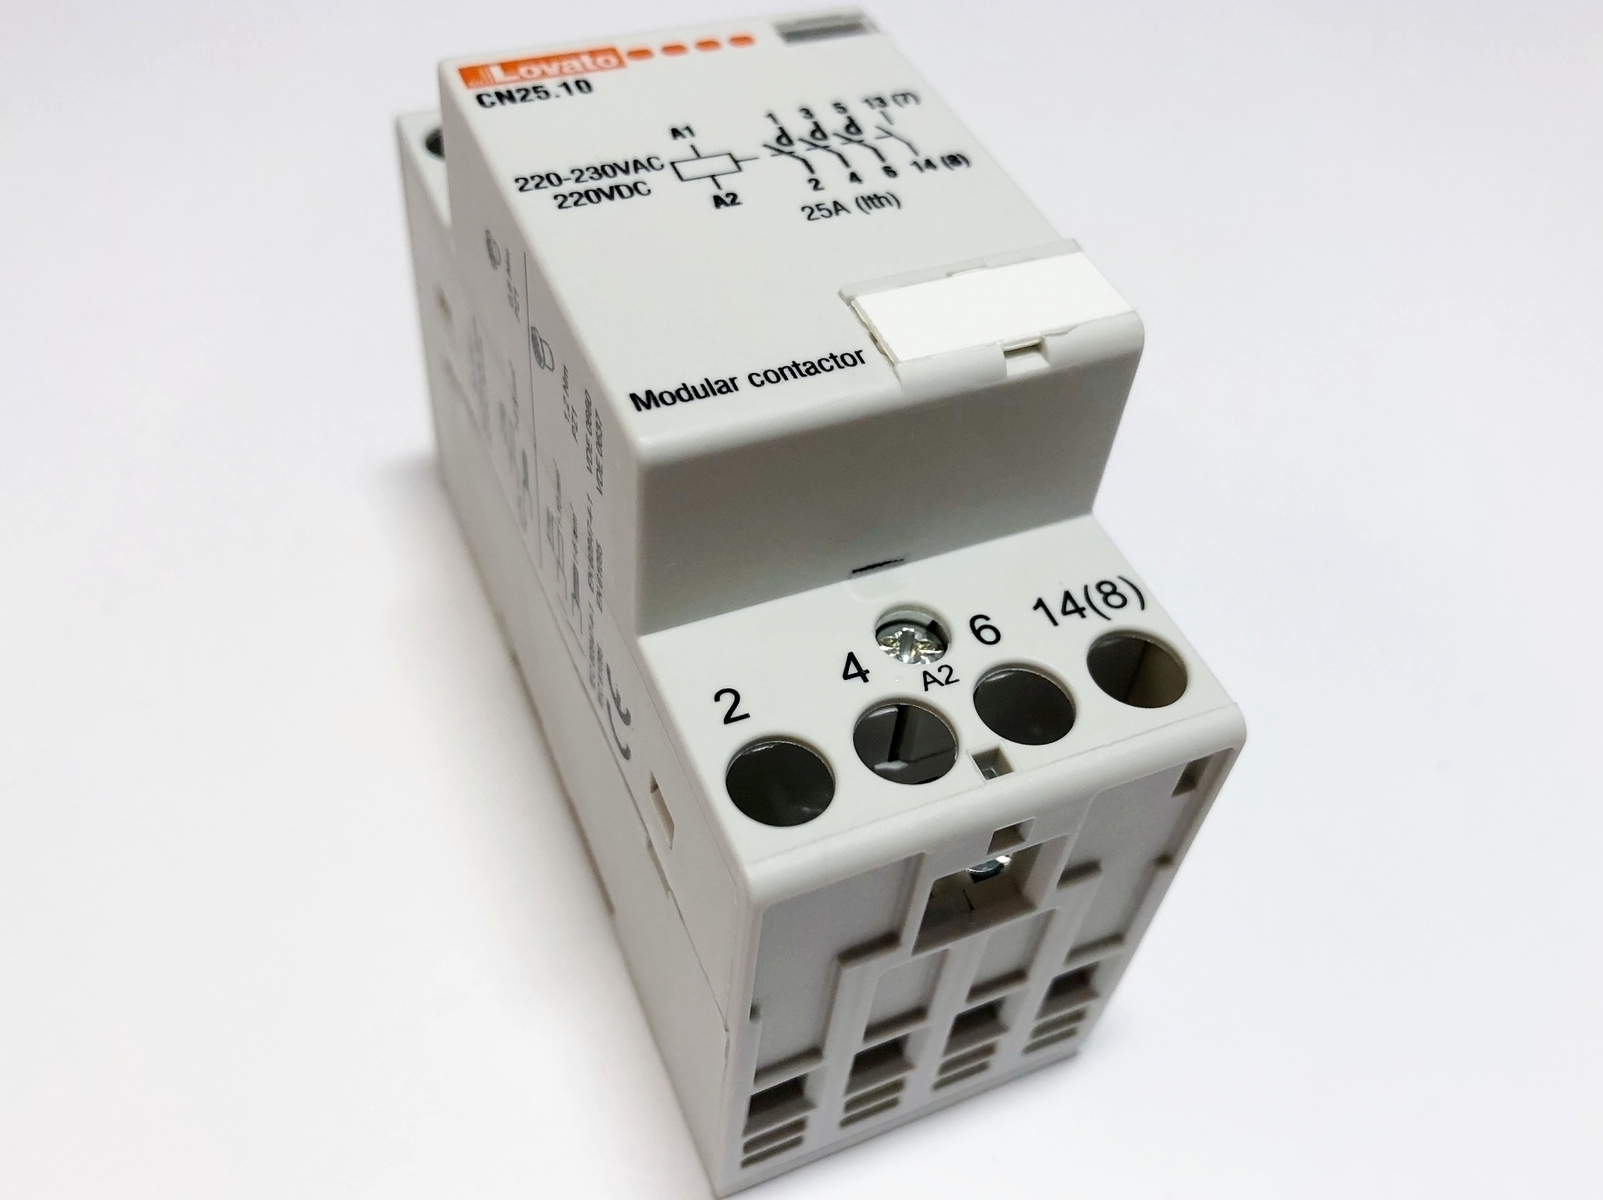 Модульный контактор 3-фазный 25A(16кВт) - 15€, CN25.10, Lovato, CN25 10 .